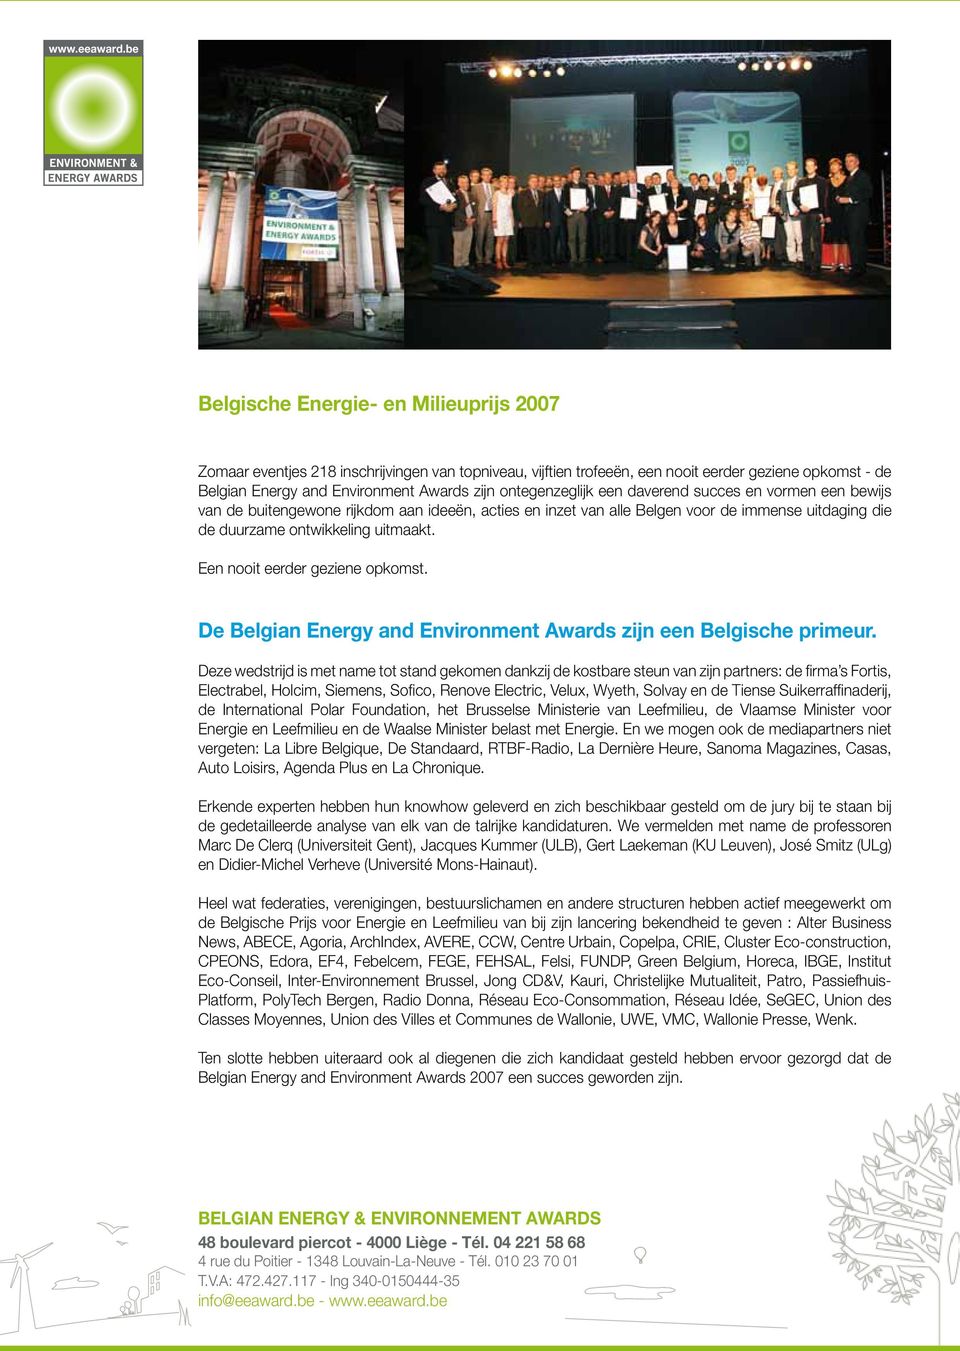 Een nooit eerder geziene opkomst. De Belgian Energy and Environment Awards zijn een Belgische primeur.